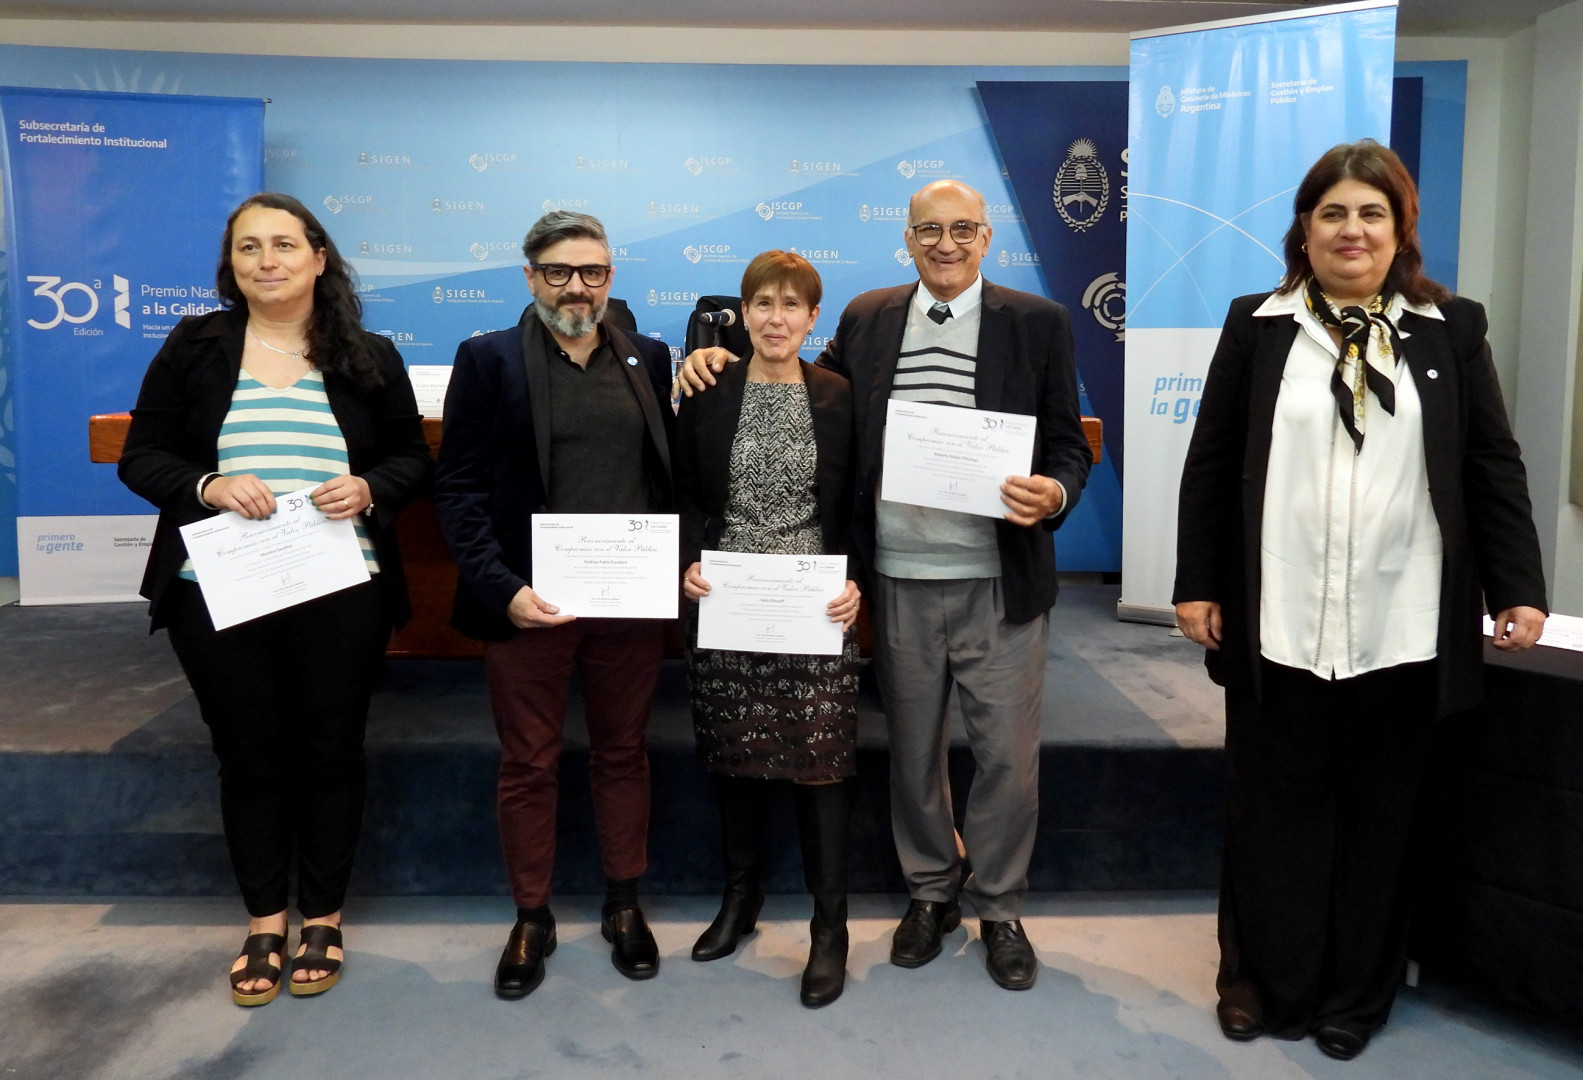 Martina Saudino, Roberto Pittaluga, Nilda Eliossof y Rodrigo Escudero recibiendo el Certificado de Compromiso con el Valor Público